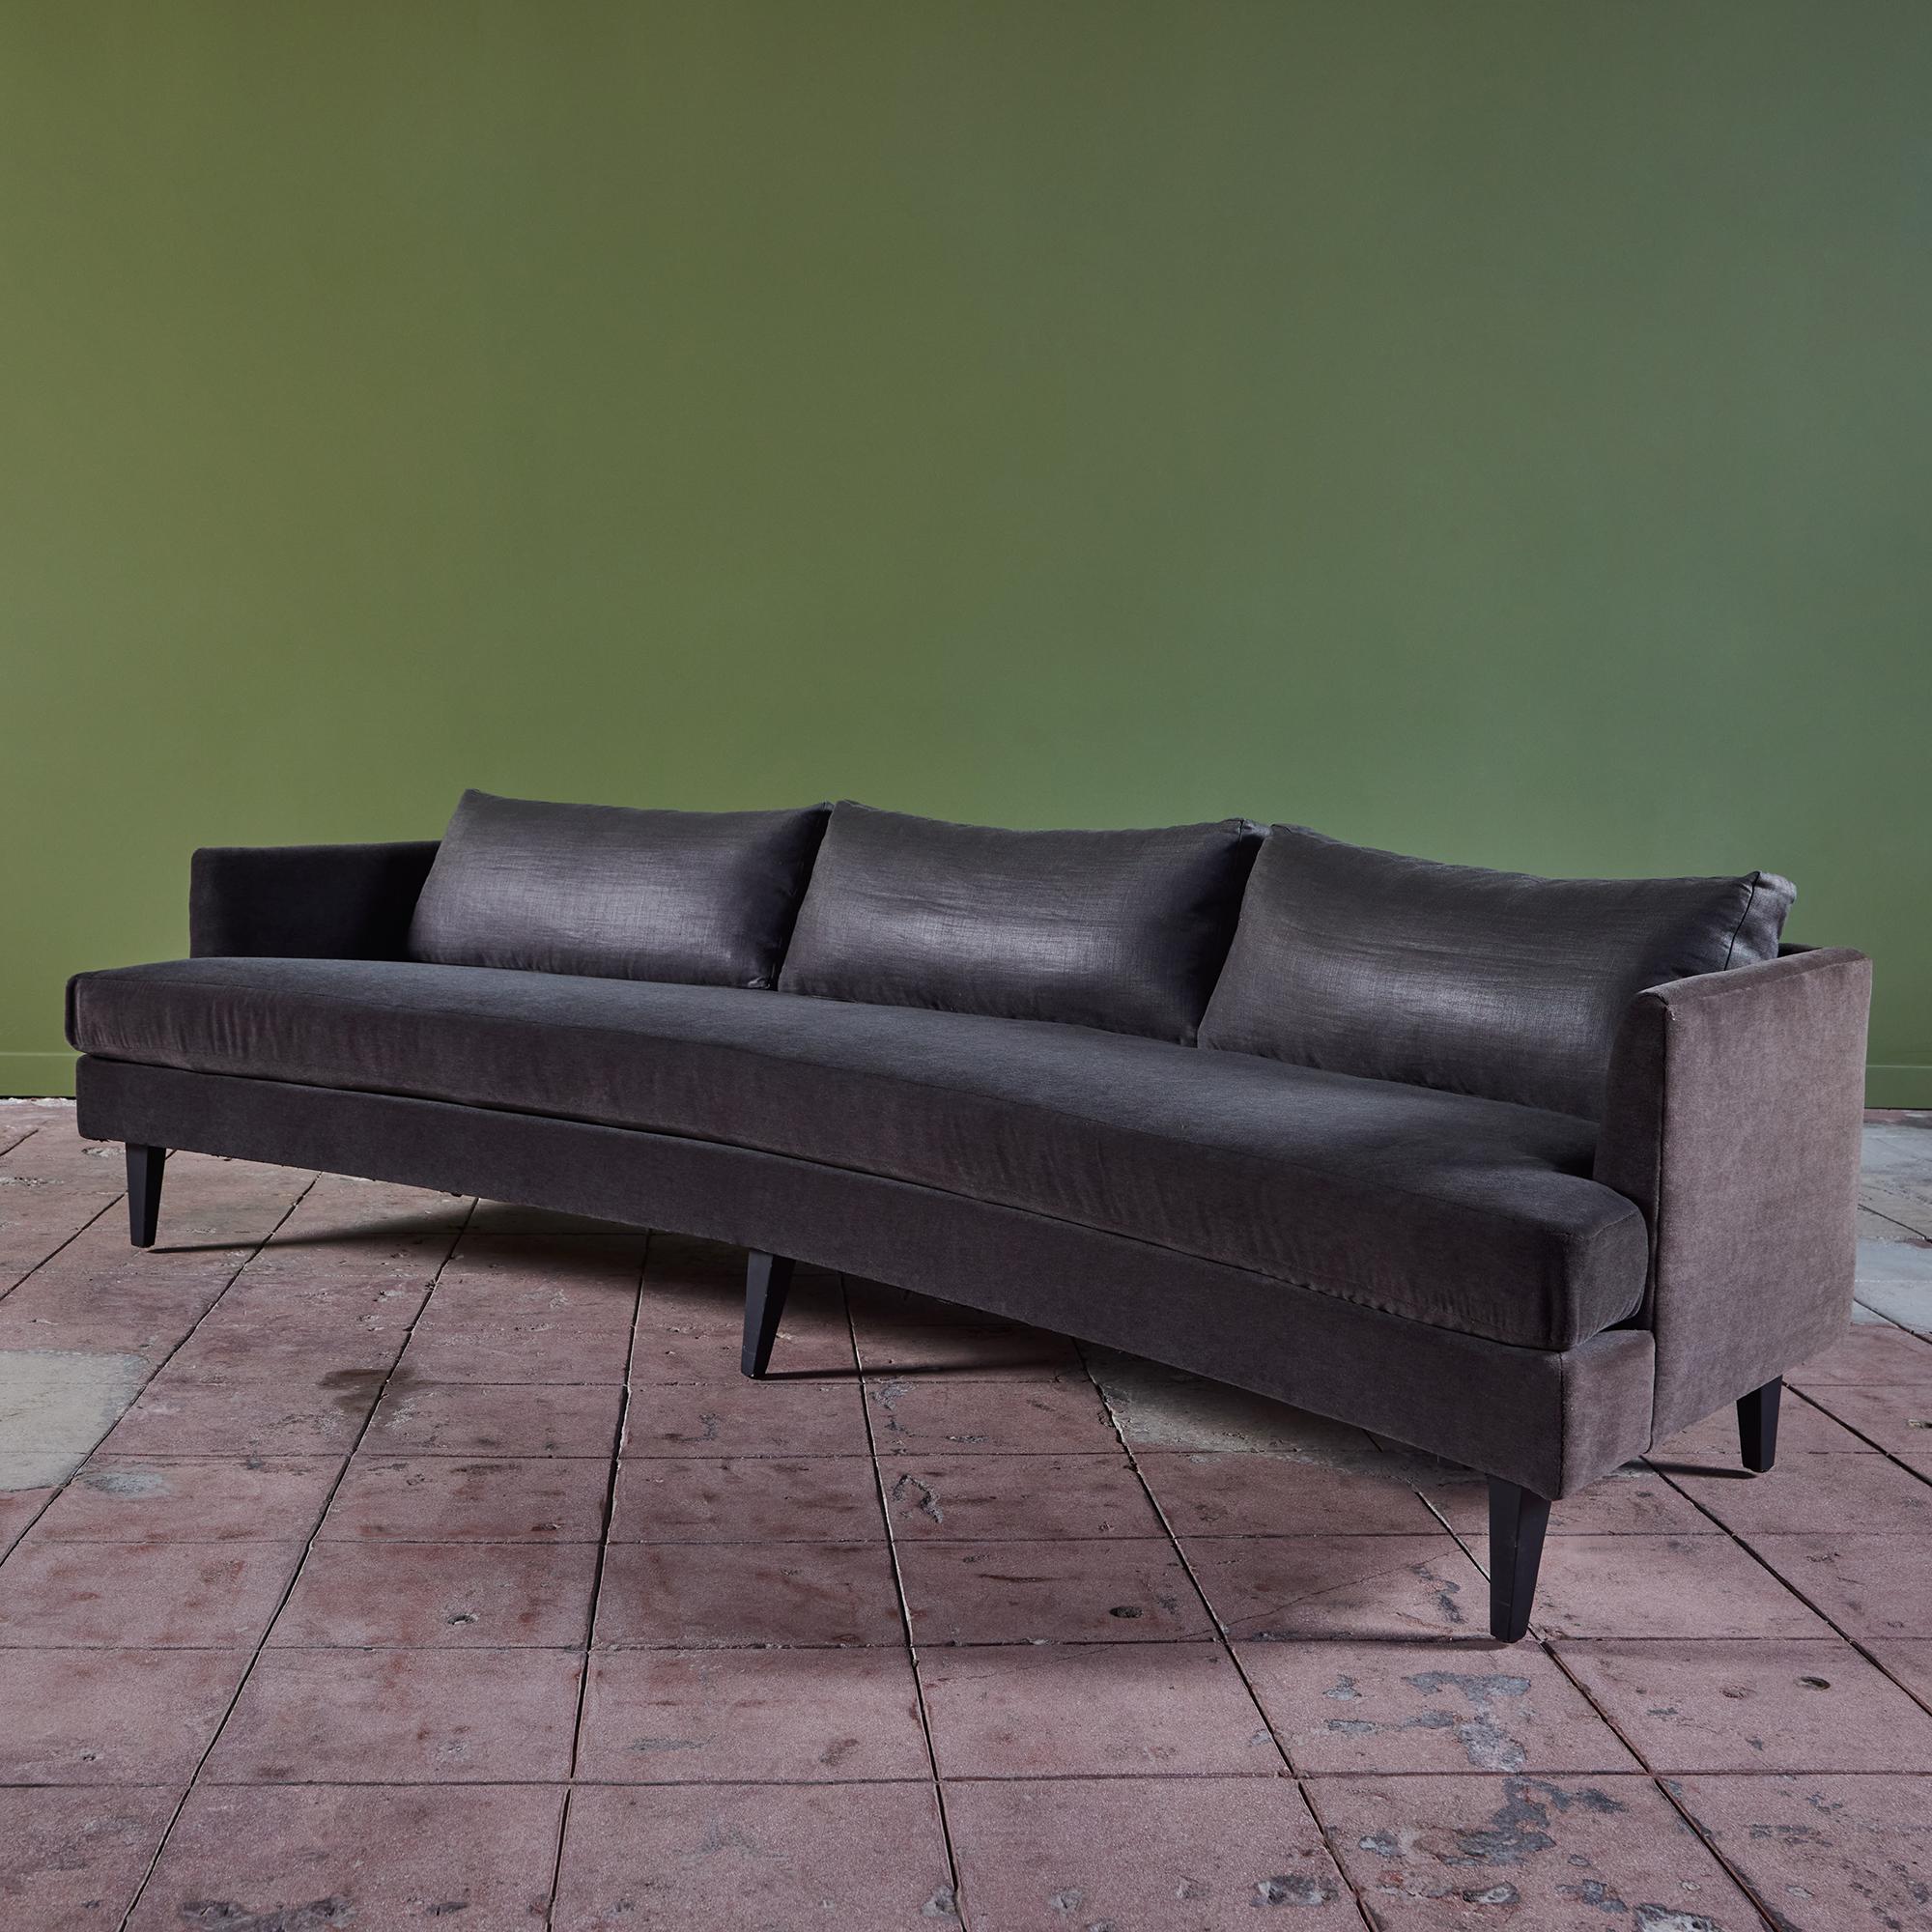 Geschwungenes Sofa im Stil von Dunbar. Dieses Sofa zeichnet sich durch eine schöne dunkelgraue Mohair-Polsterung an Rahmen und Sitz aus. Die Rückenlehne ist mit drei Kissen aus einem dunkelgrauen Leinen-Baumwoll-Gemisch gepolstert, das einen